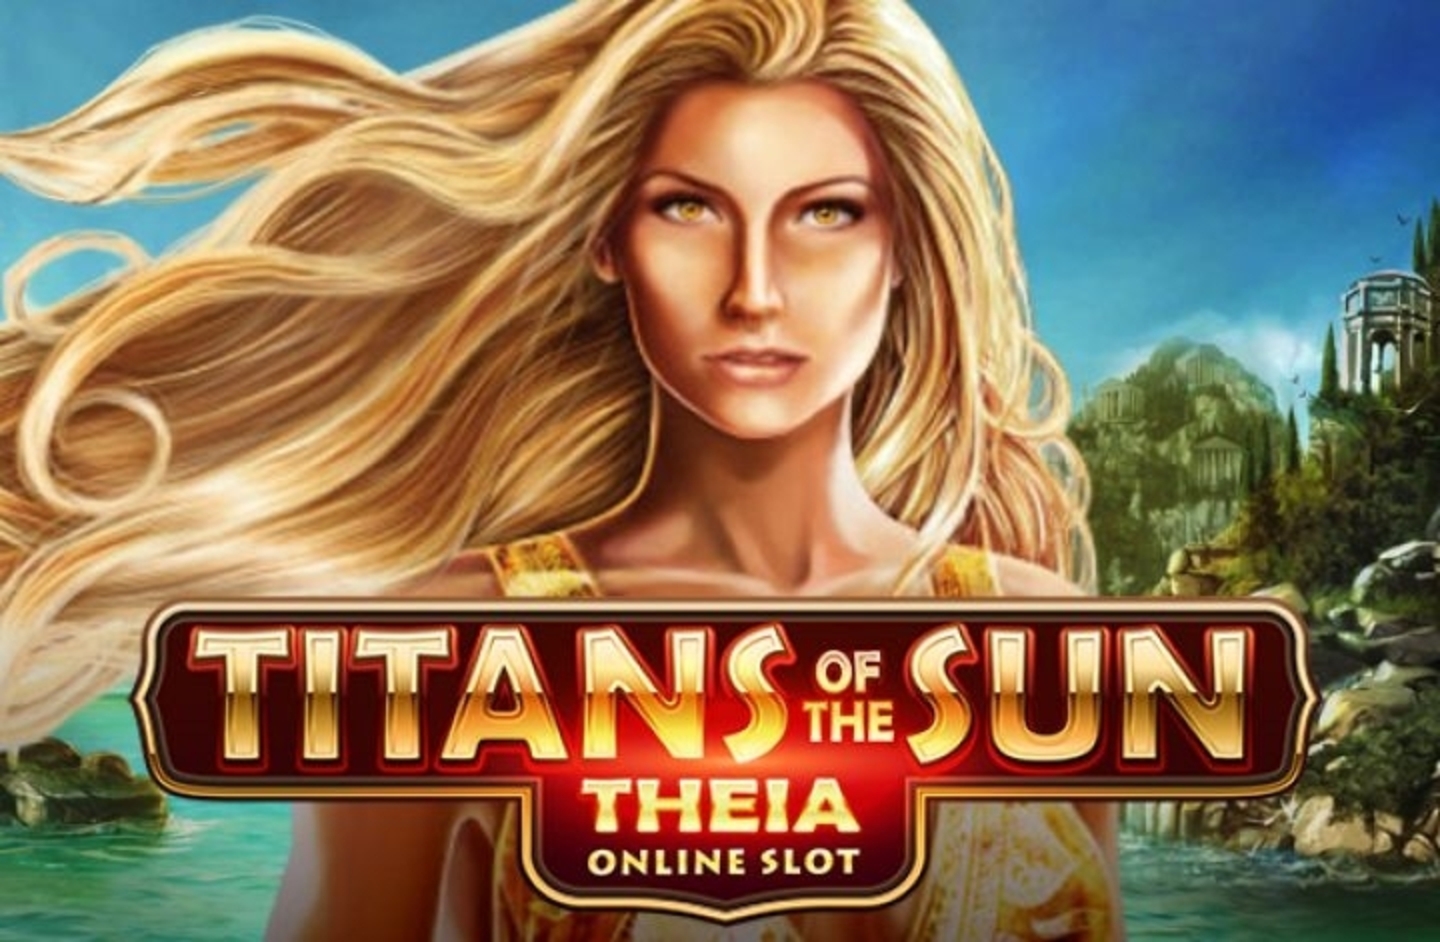 Titans of the Sun Theia demo